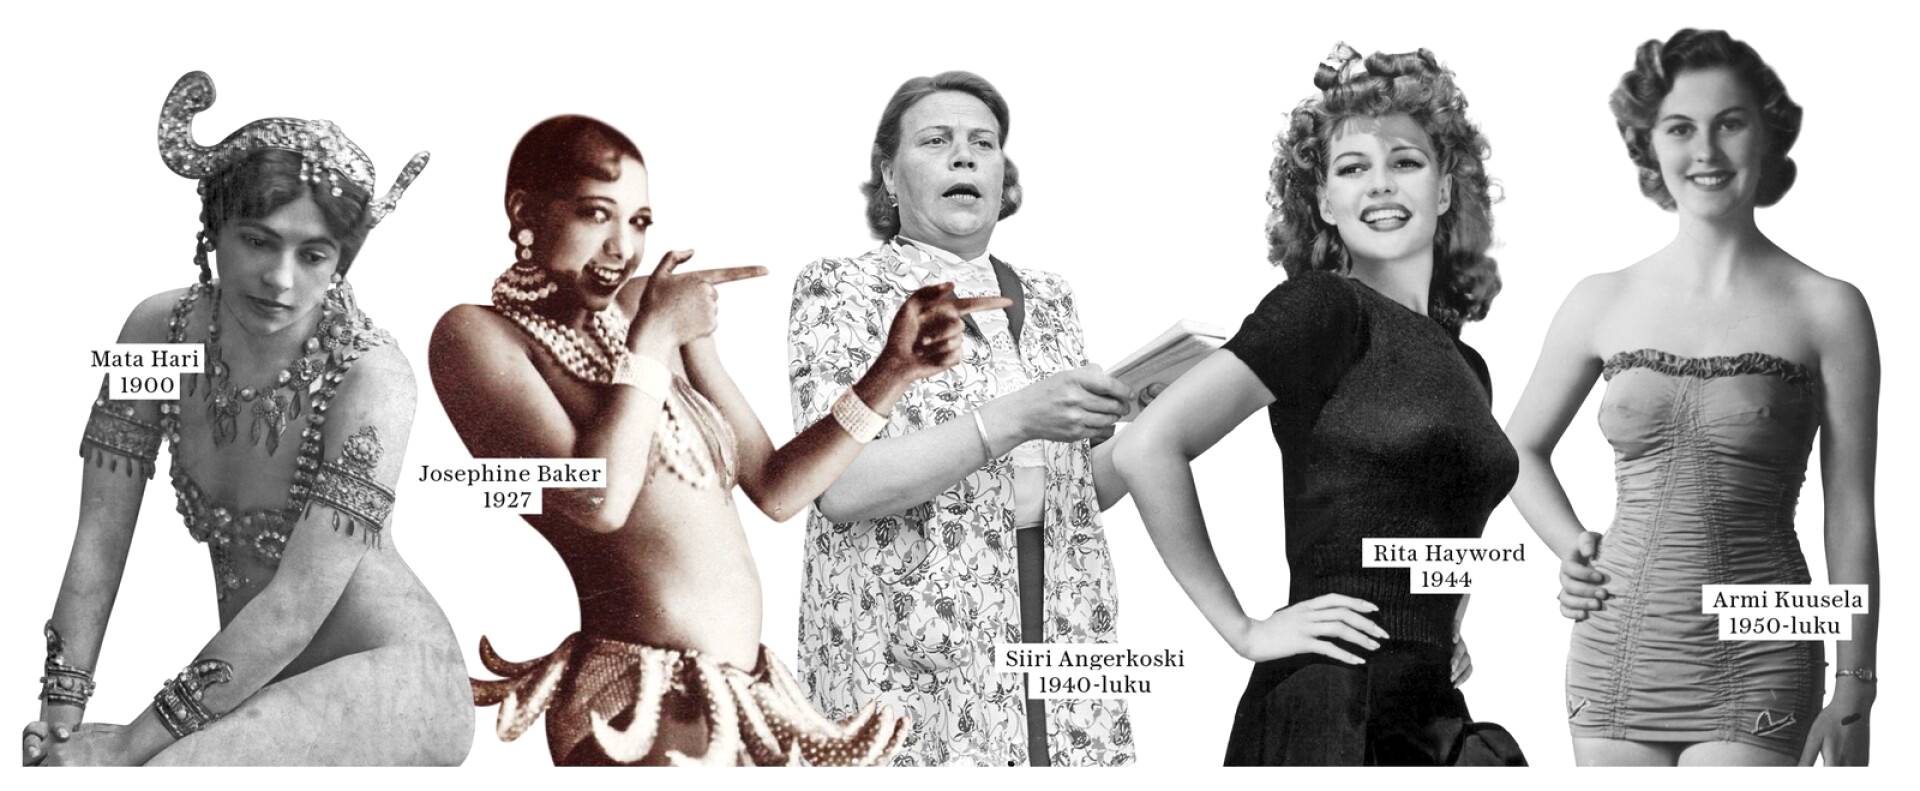 Vasemmalta oikealle: Mata Hari, 1900. Josephine Baker, 1927. Siiri Angerkoski, 1940-luku. Rita Hayword, 1944. Armi Kuusela, 1950. 